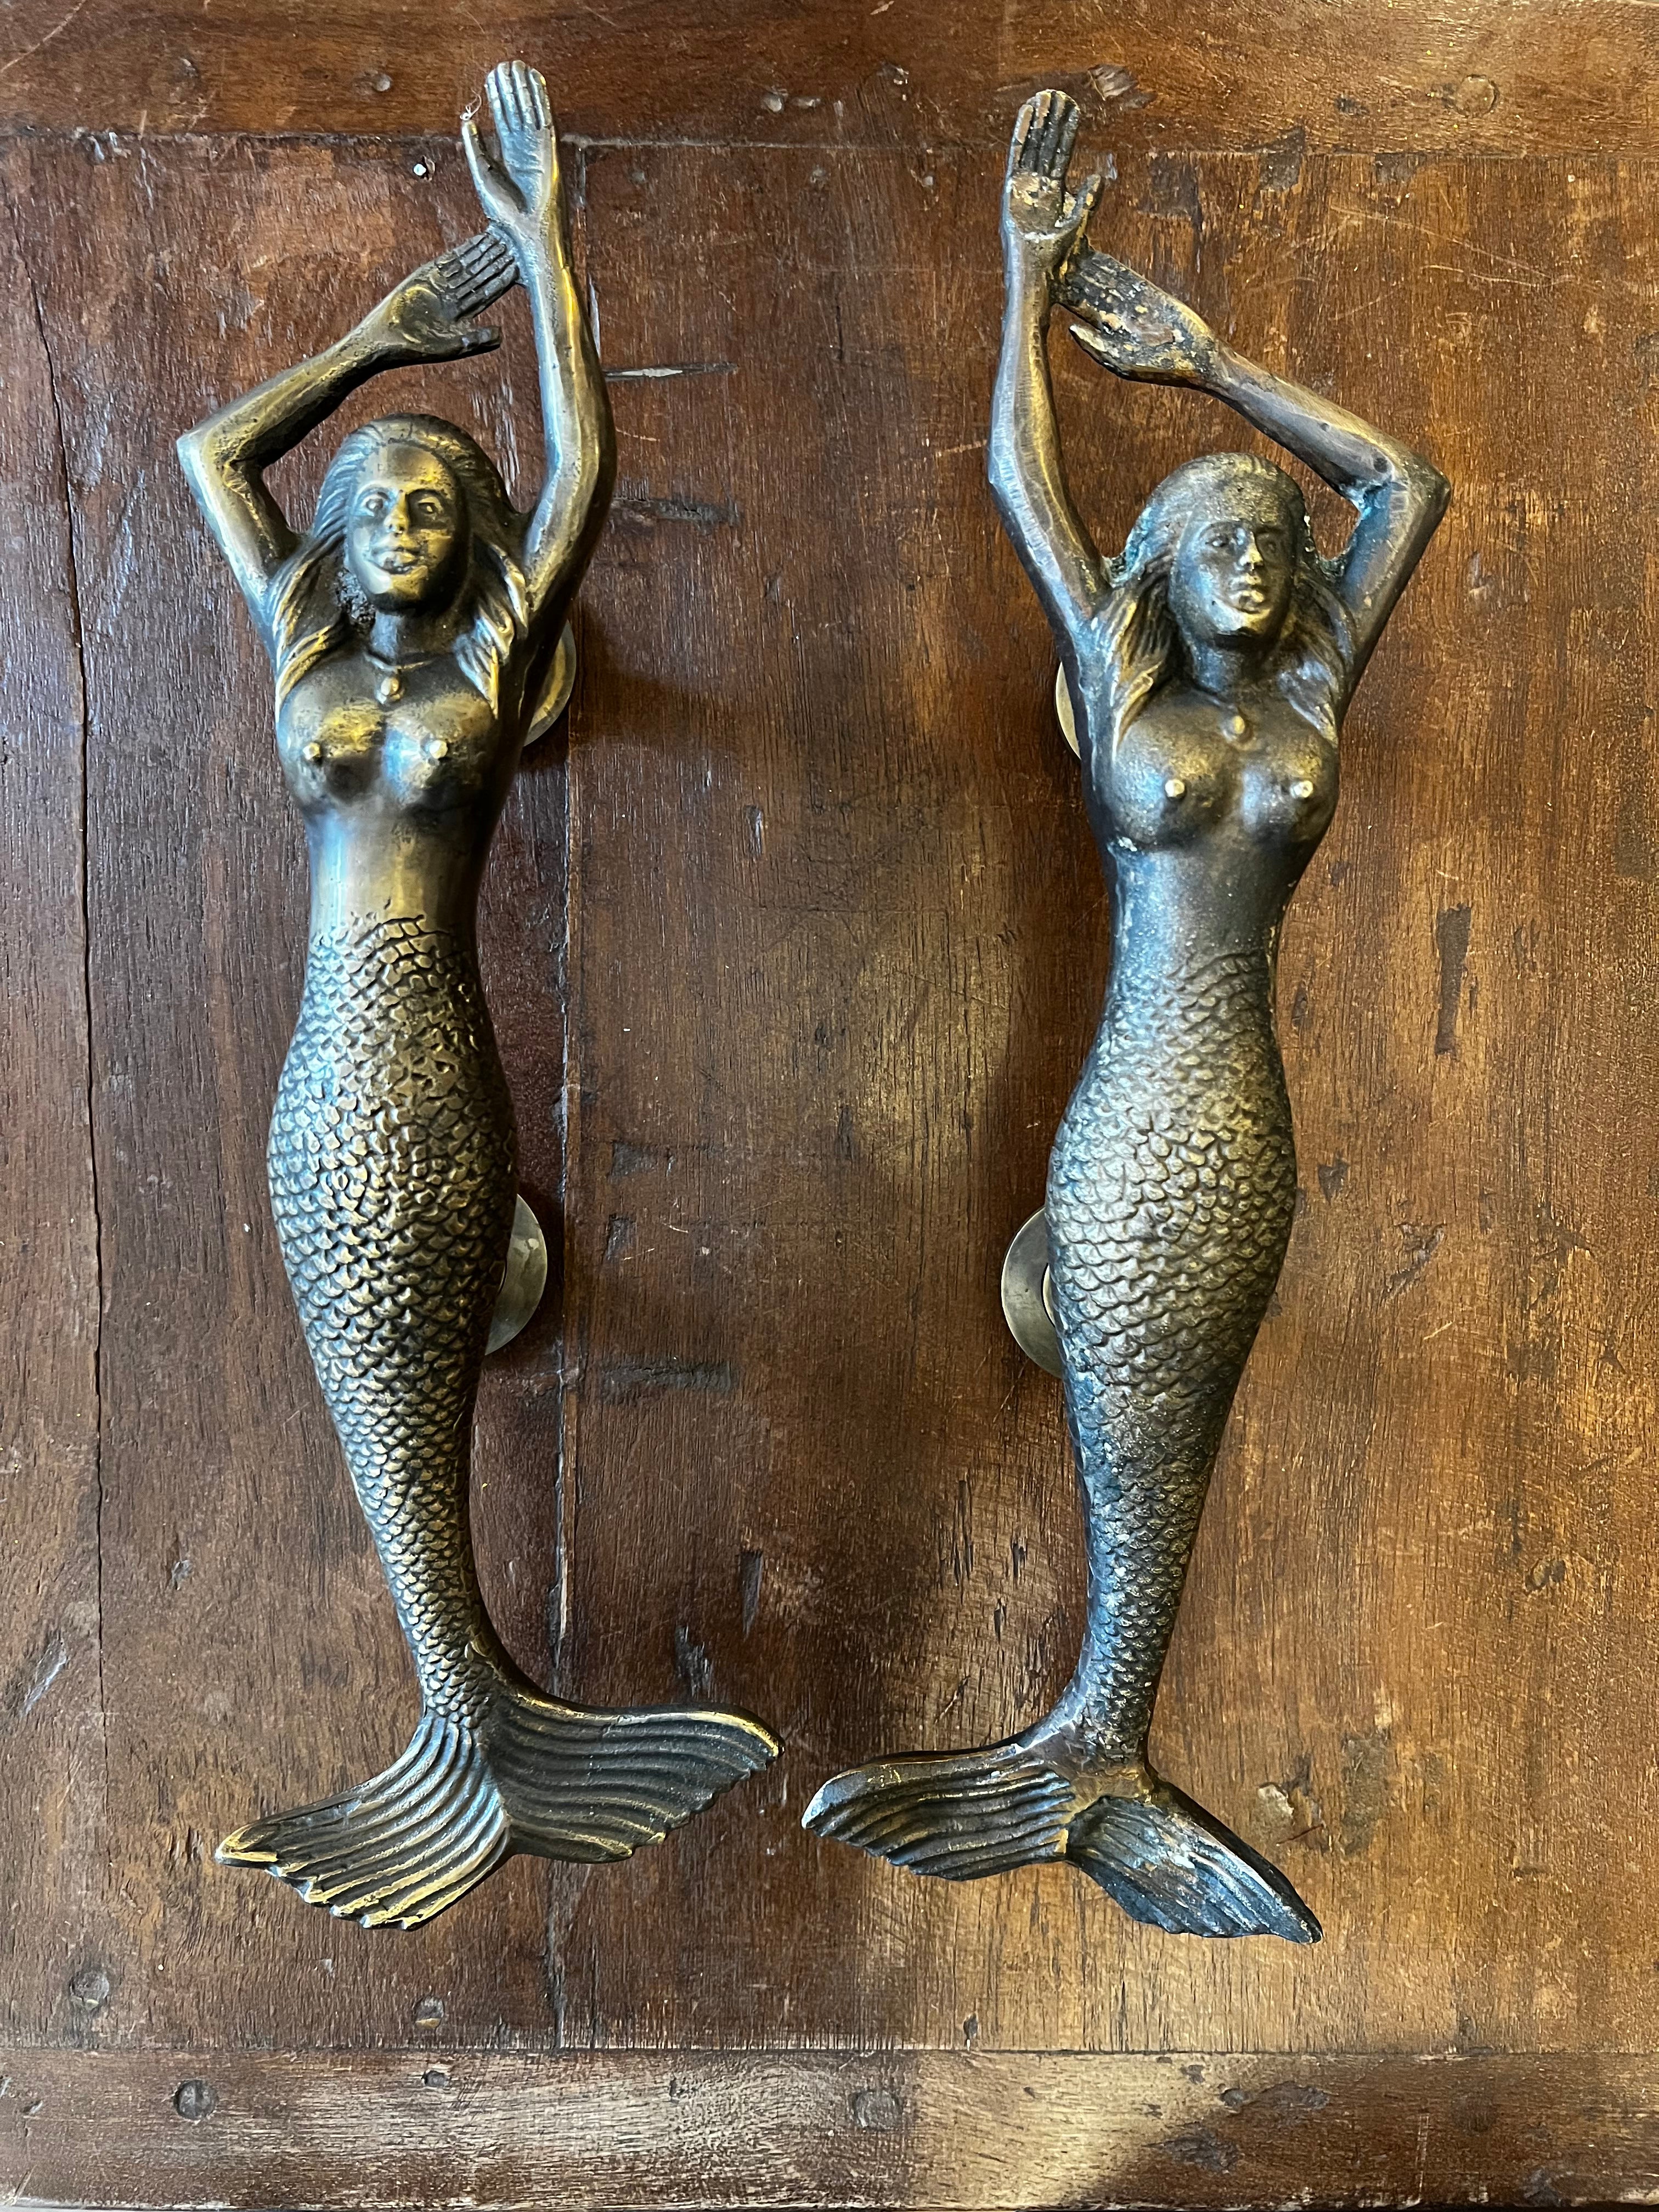 Mermaid doorknob pair